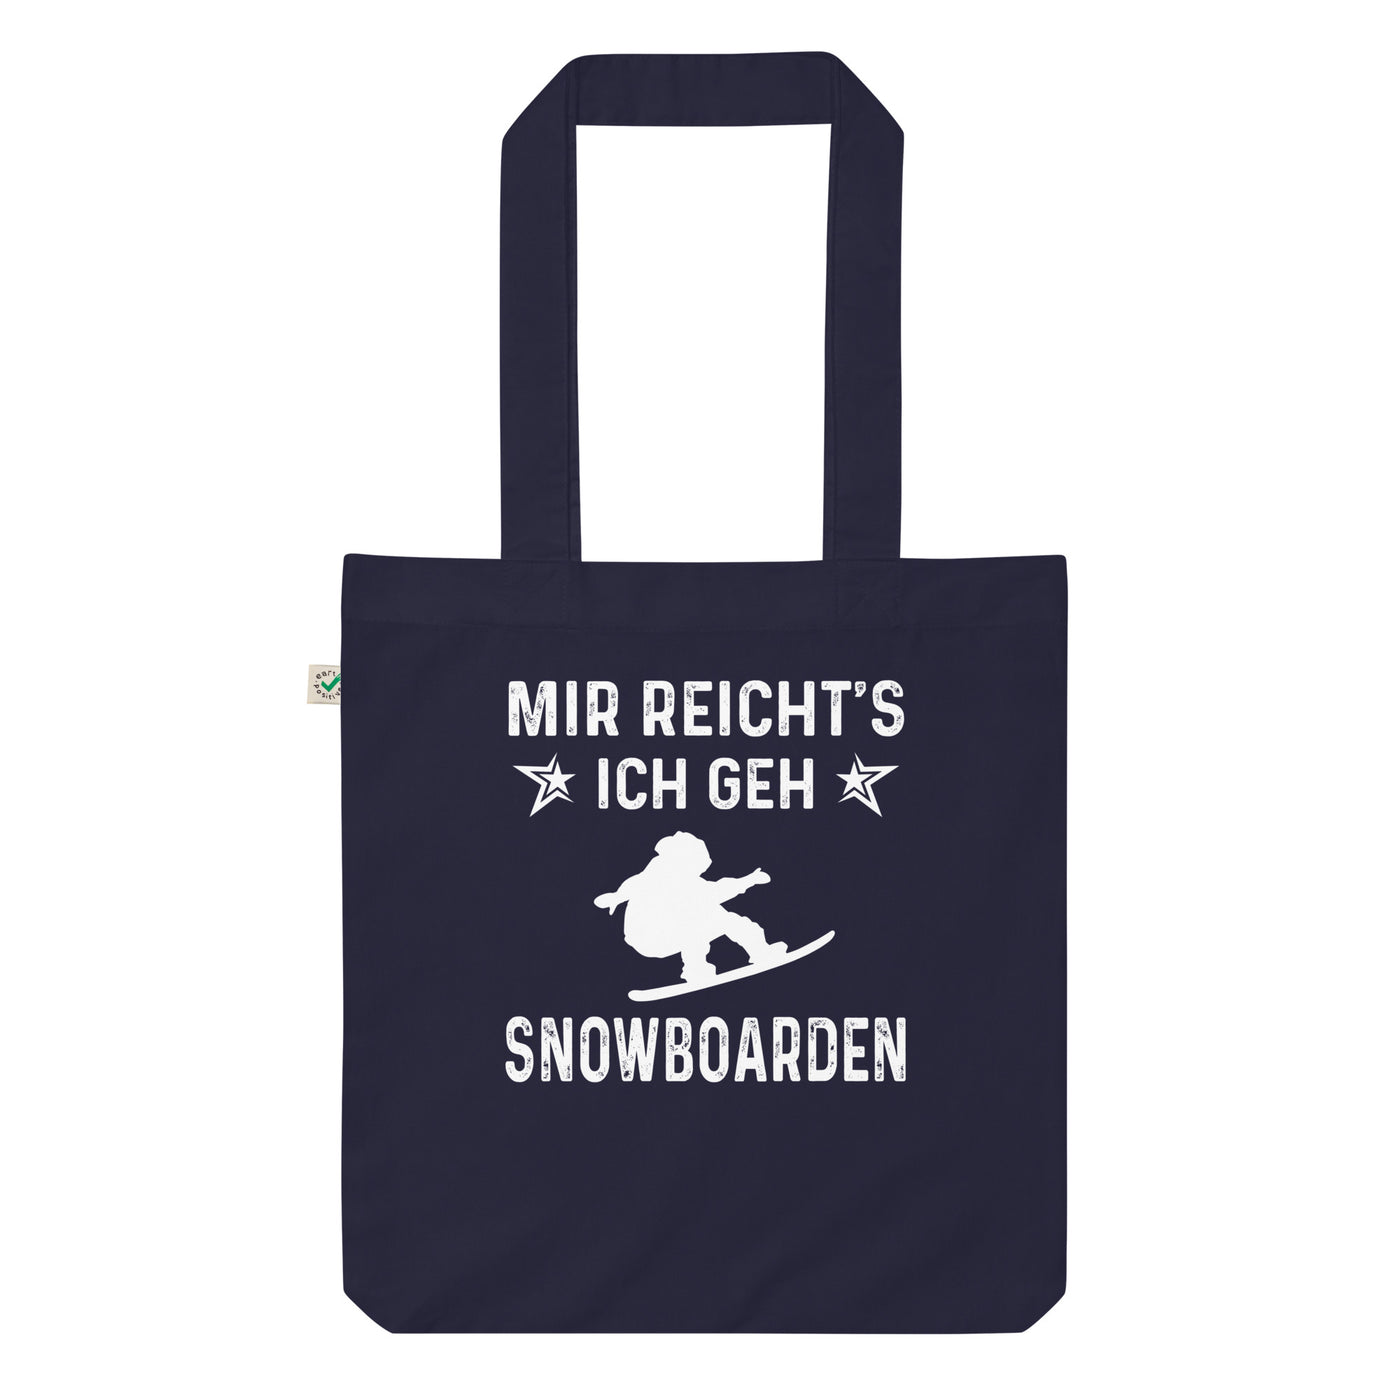 Mir Reicht'S Ich Gen Snowboarden - Organic Einkaufstasche snowboarden Navy